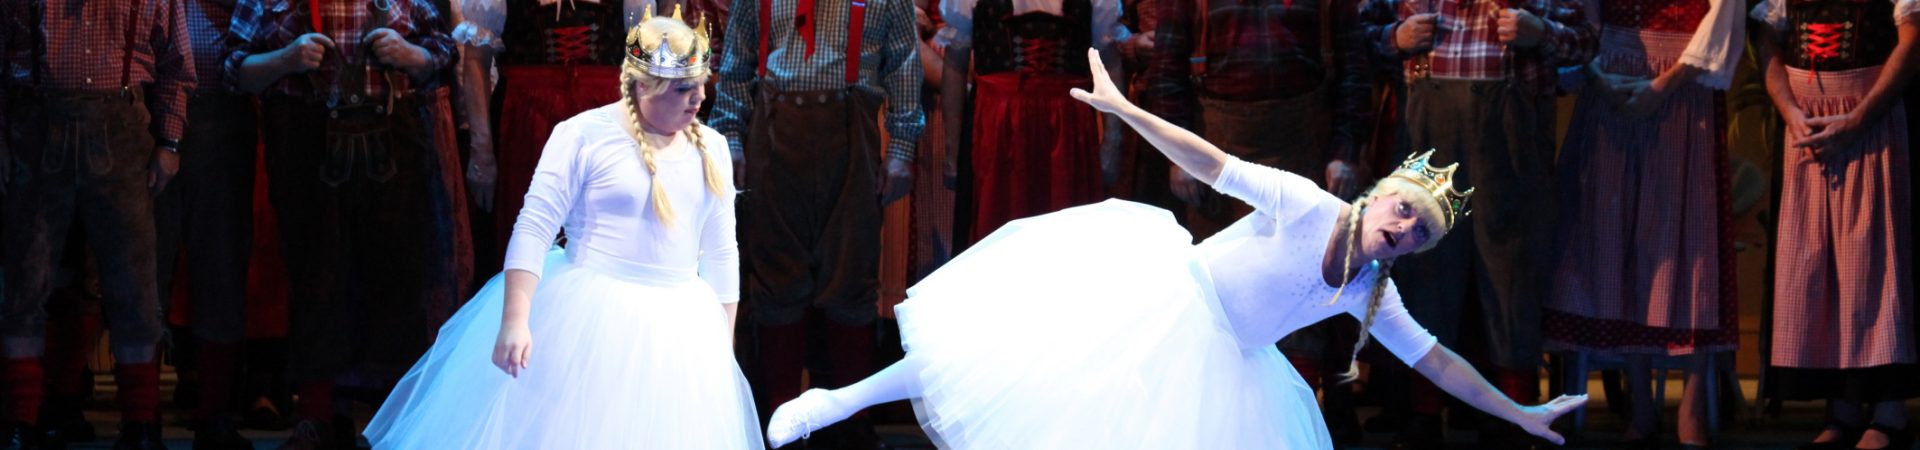 Kölner Jungfrau - dringend gesucht - Divertissementchen 2012 - Balletttänzer in komischer Szene